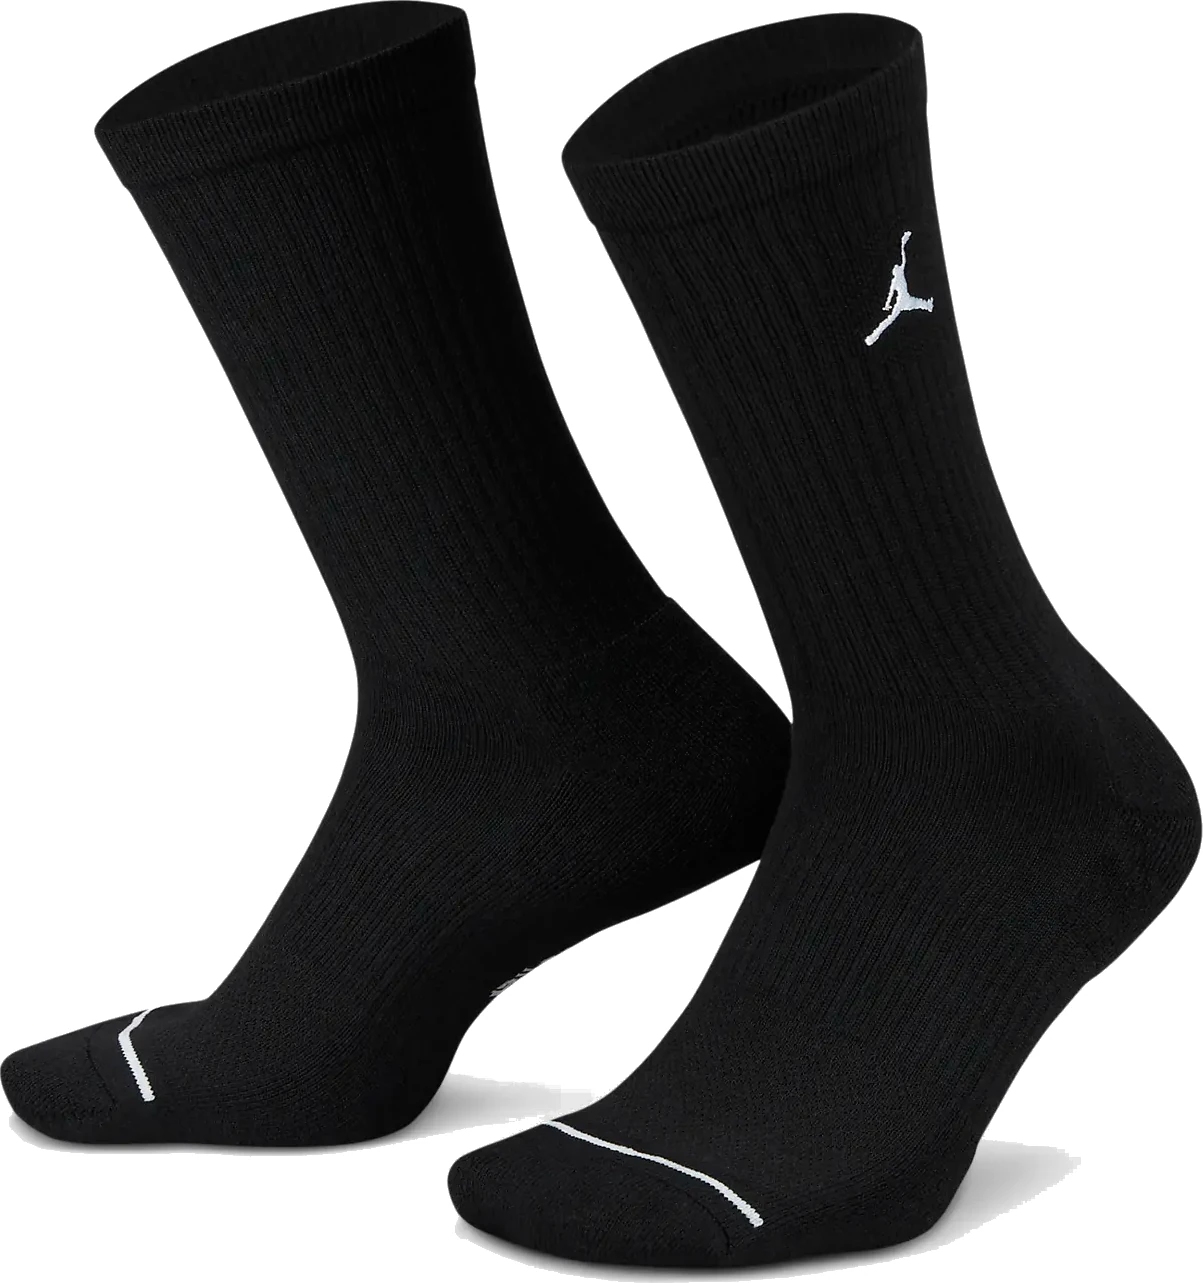 Nike Chaussettes - Jordan Everyday Crew (3 Paire) - noir/blanc DX9632-010